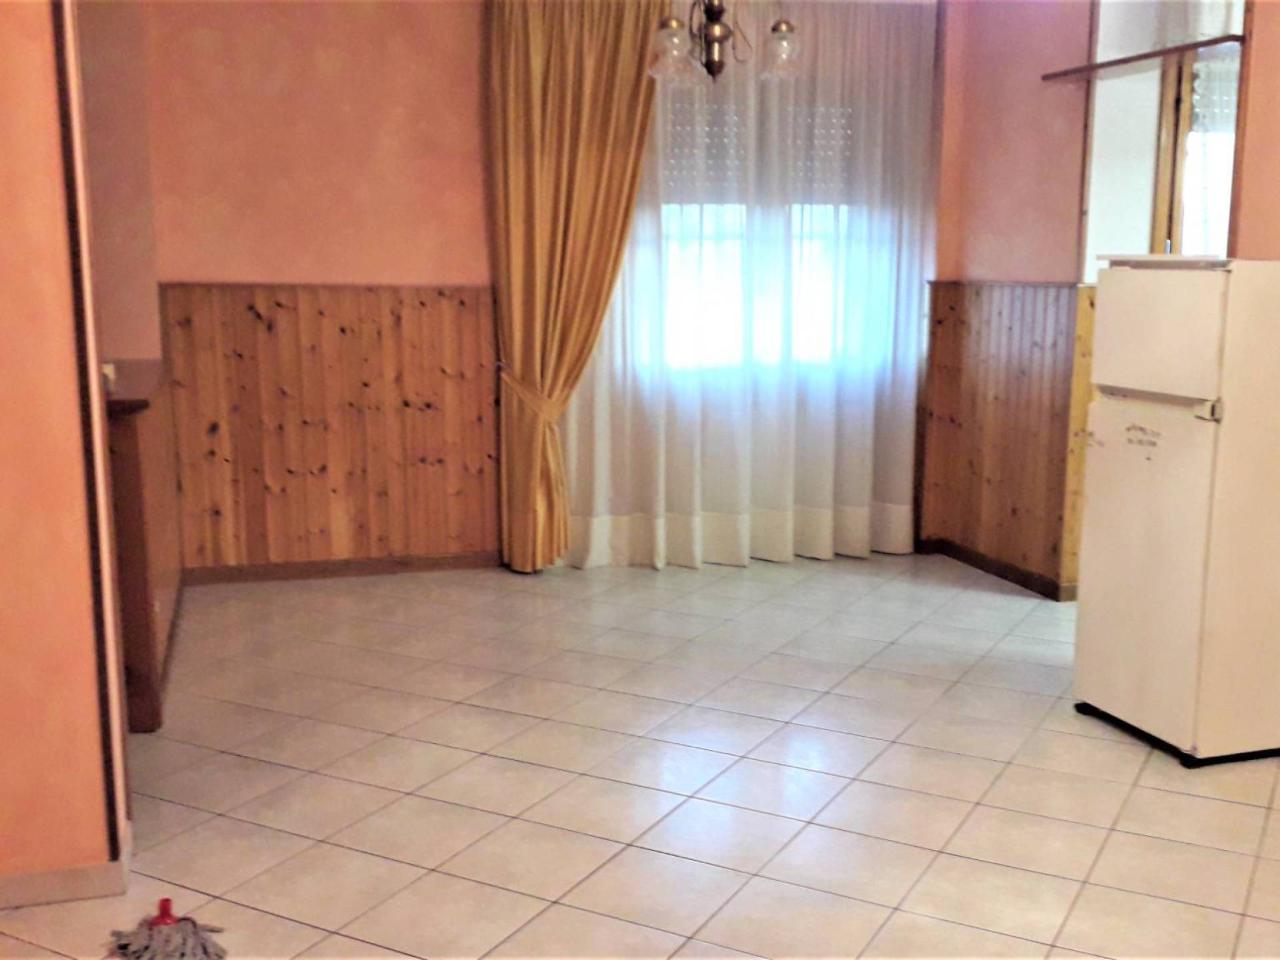 Appartamento in vendita a Monsummano Terme